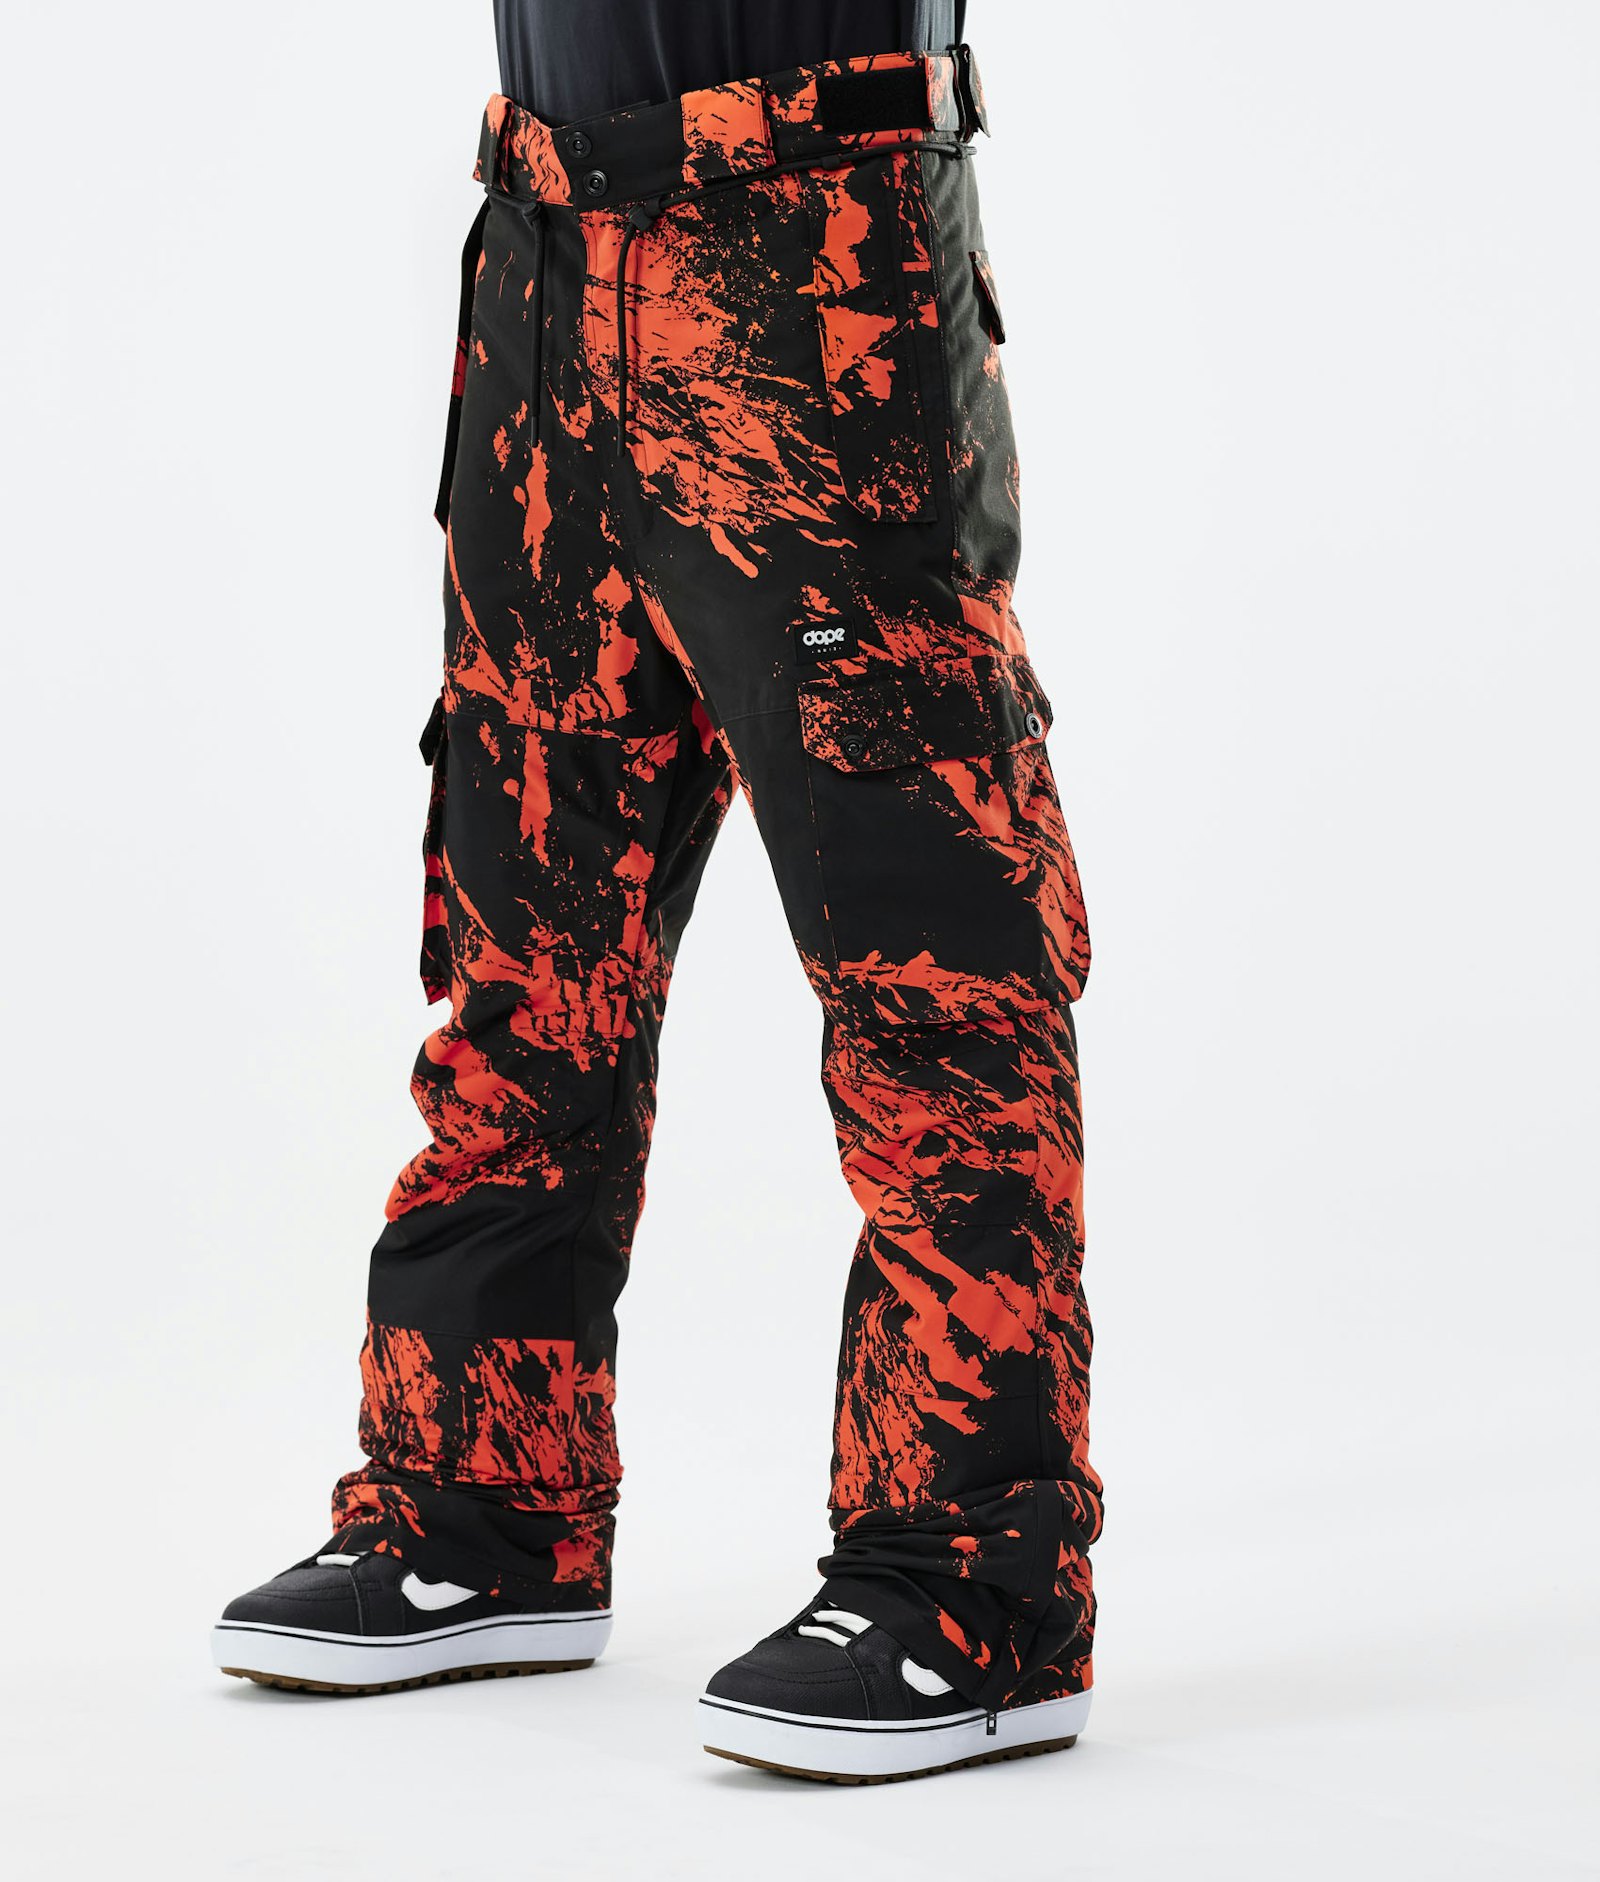 Iconic 2021 Pantalon de Snowboard Homme Paint Orange